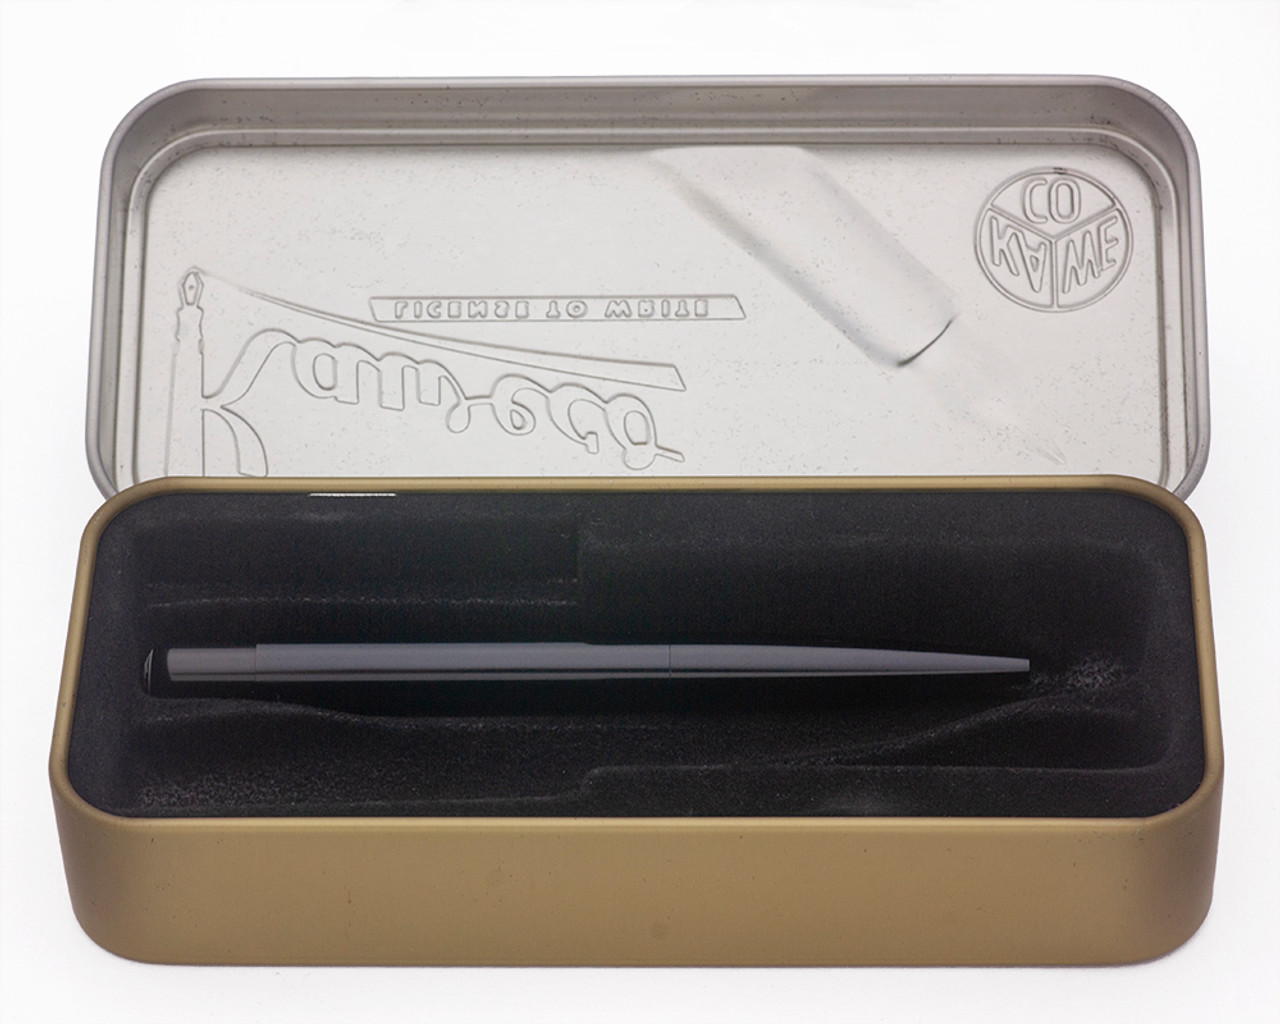 Kaweco Liliput Ballpoint Pen - Black  (Mint in Box w 2 Refills, Works Well)